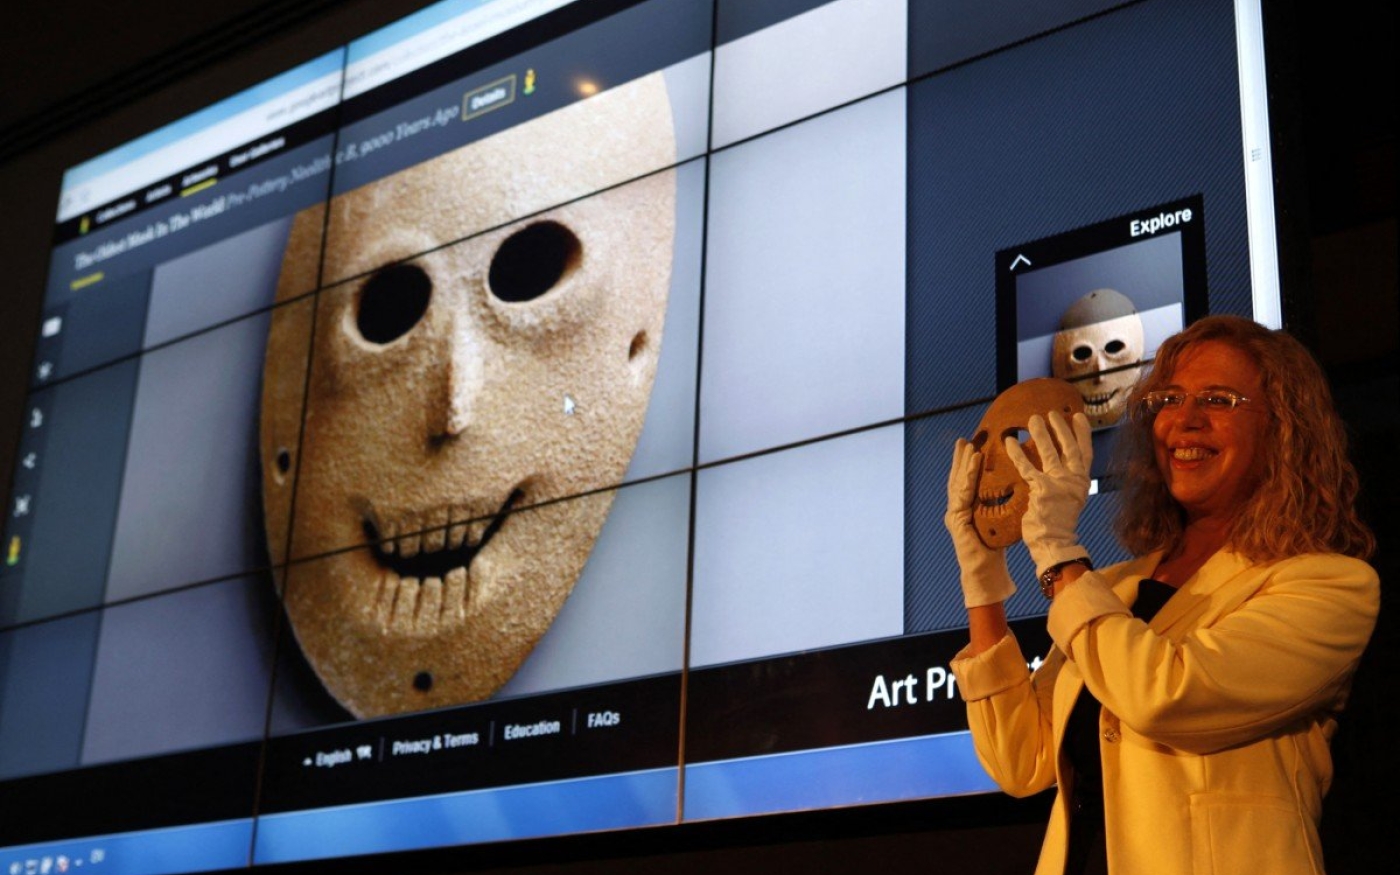 La conservatrice du Musée d’Israël, Debby Hershman, brandit un masque néolithique, également projeté en arrière-plan, dans le cadre du Google Art Project en avril 2012, à Jérusalem (AFP)